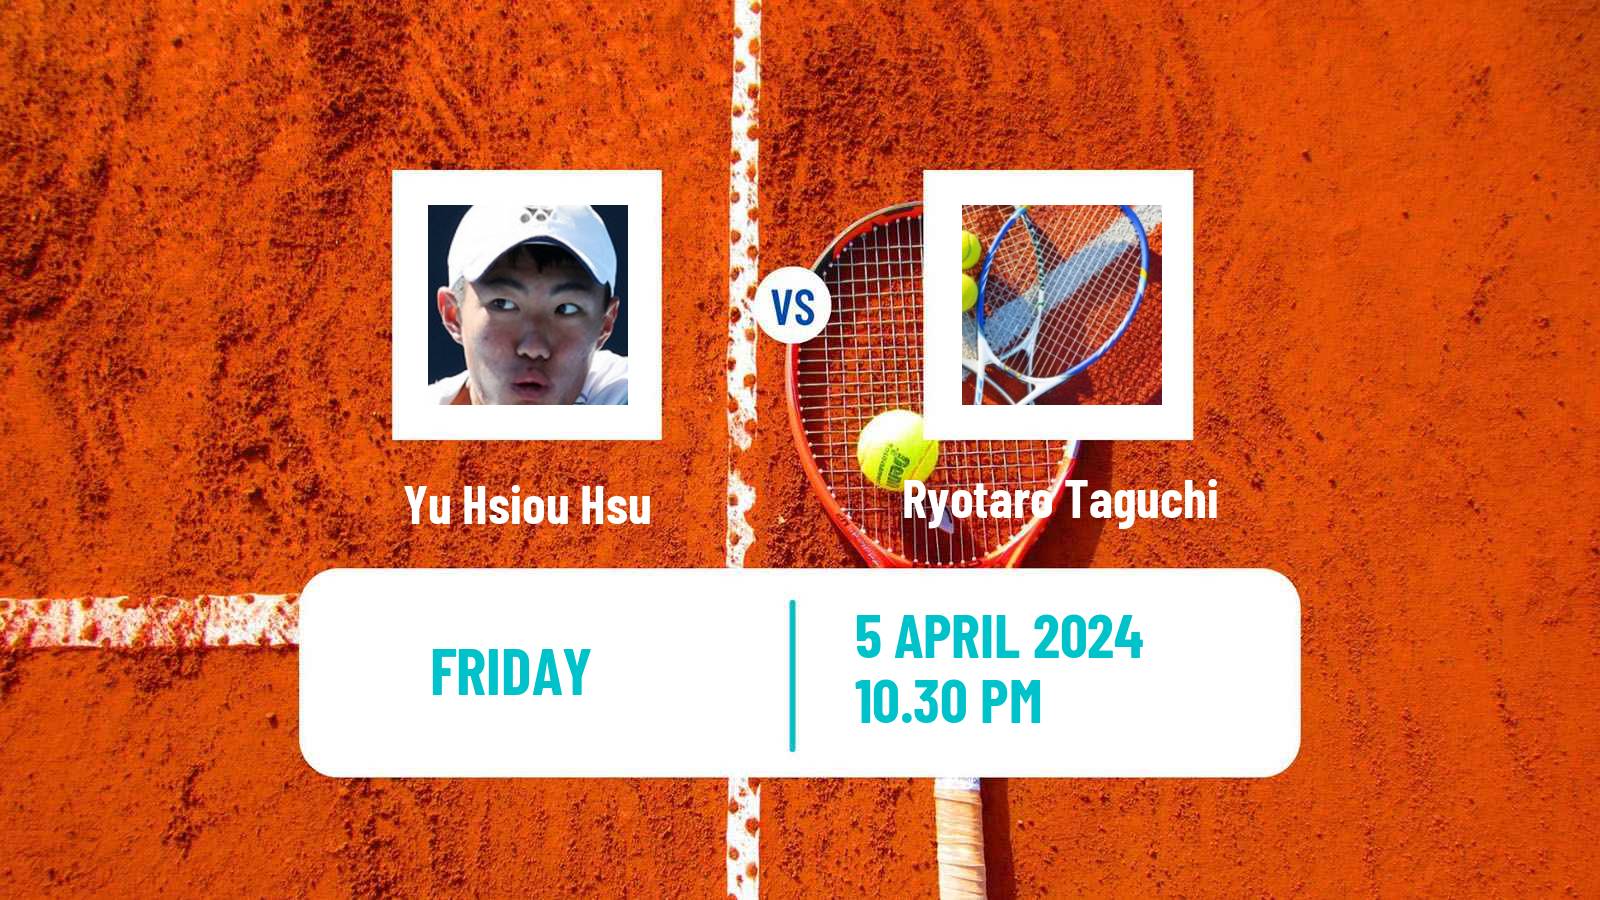 Tennis ITF M15 Kashiwa Men Yu Hsiou Hsu - Ryotaro Taguchi